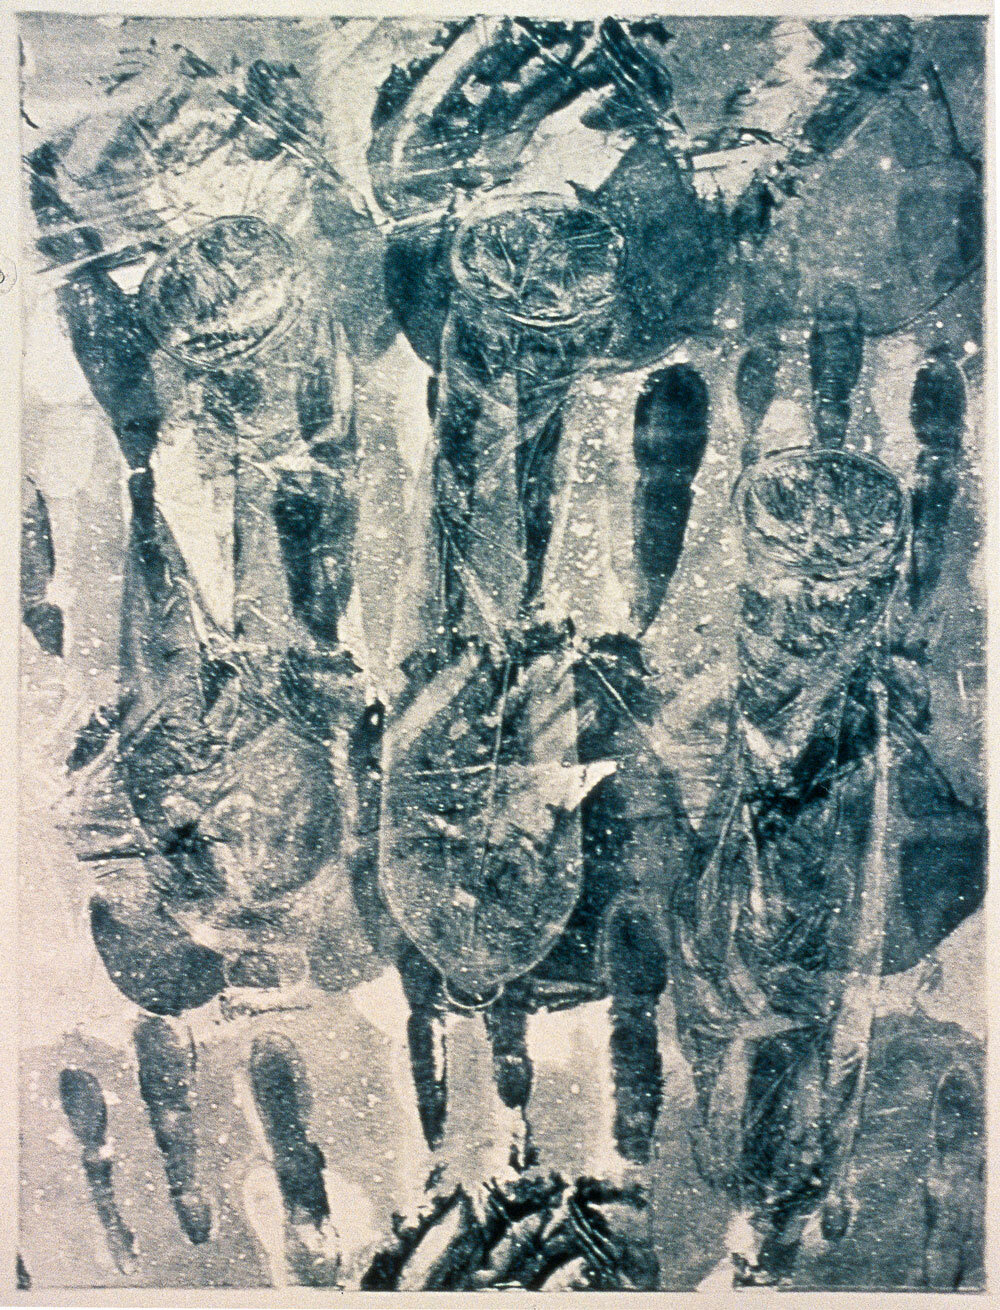   Overlay , 1994, monotype, 15 x 11 inches 